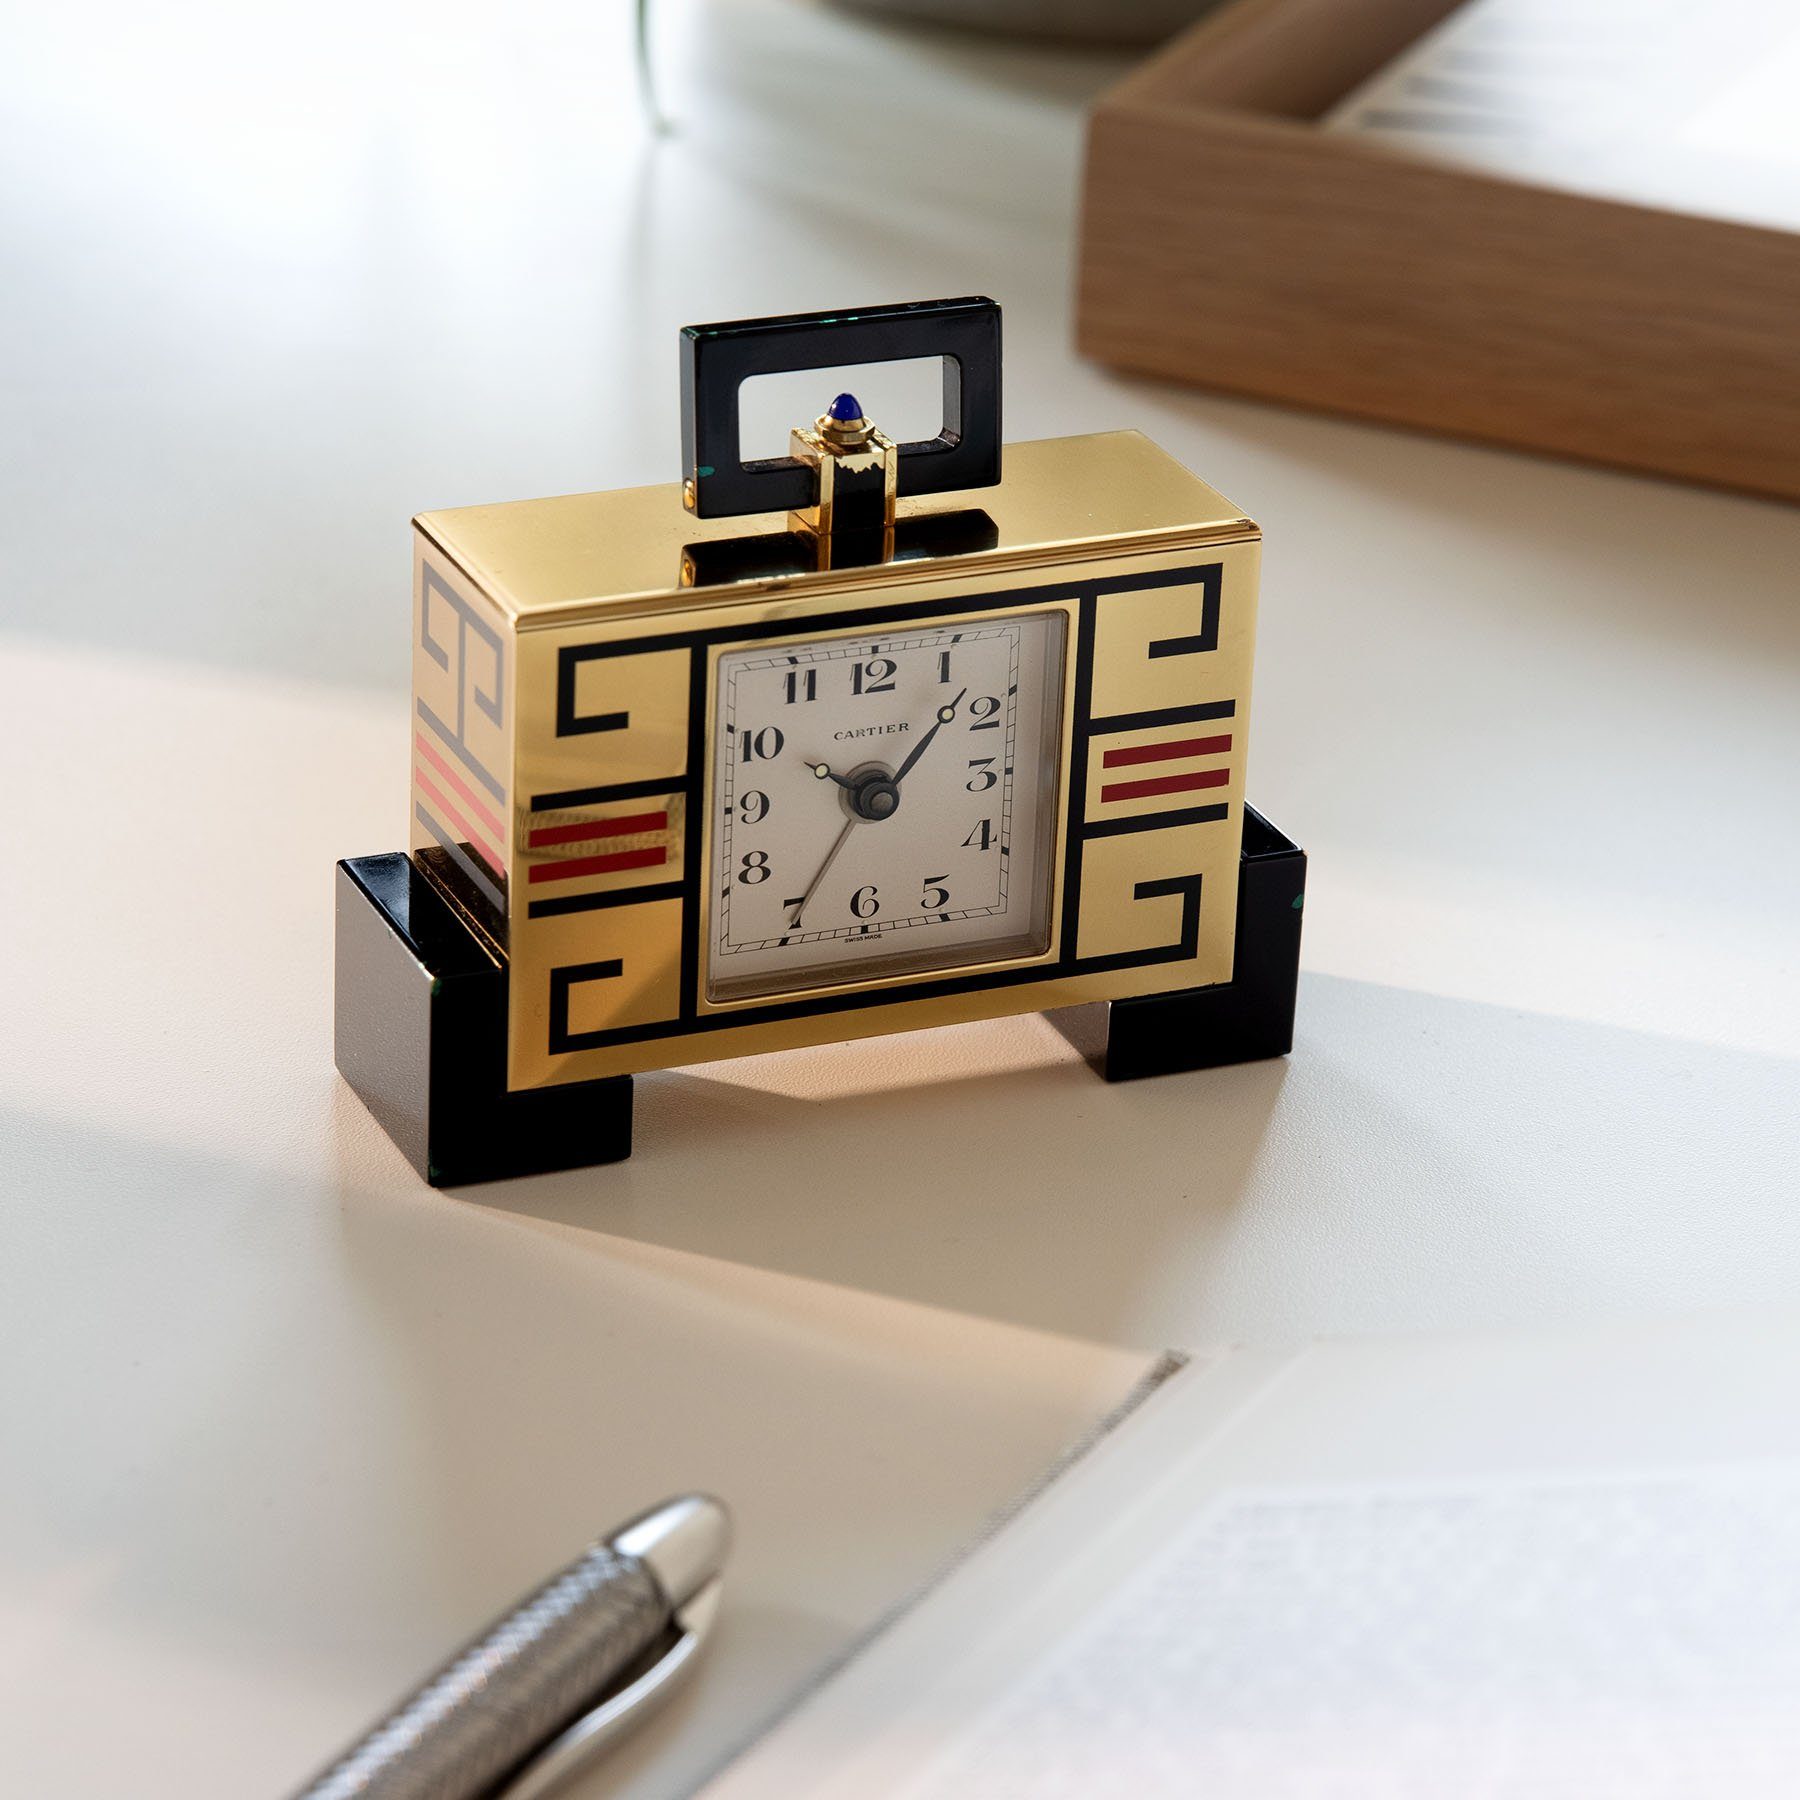 Cartier Art Deco Style Alarm Desk Clock 